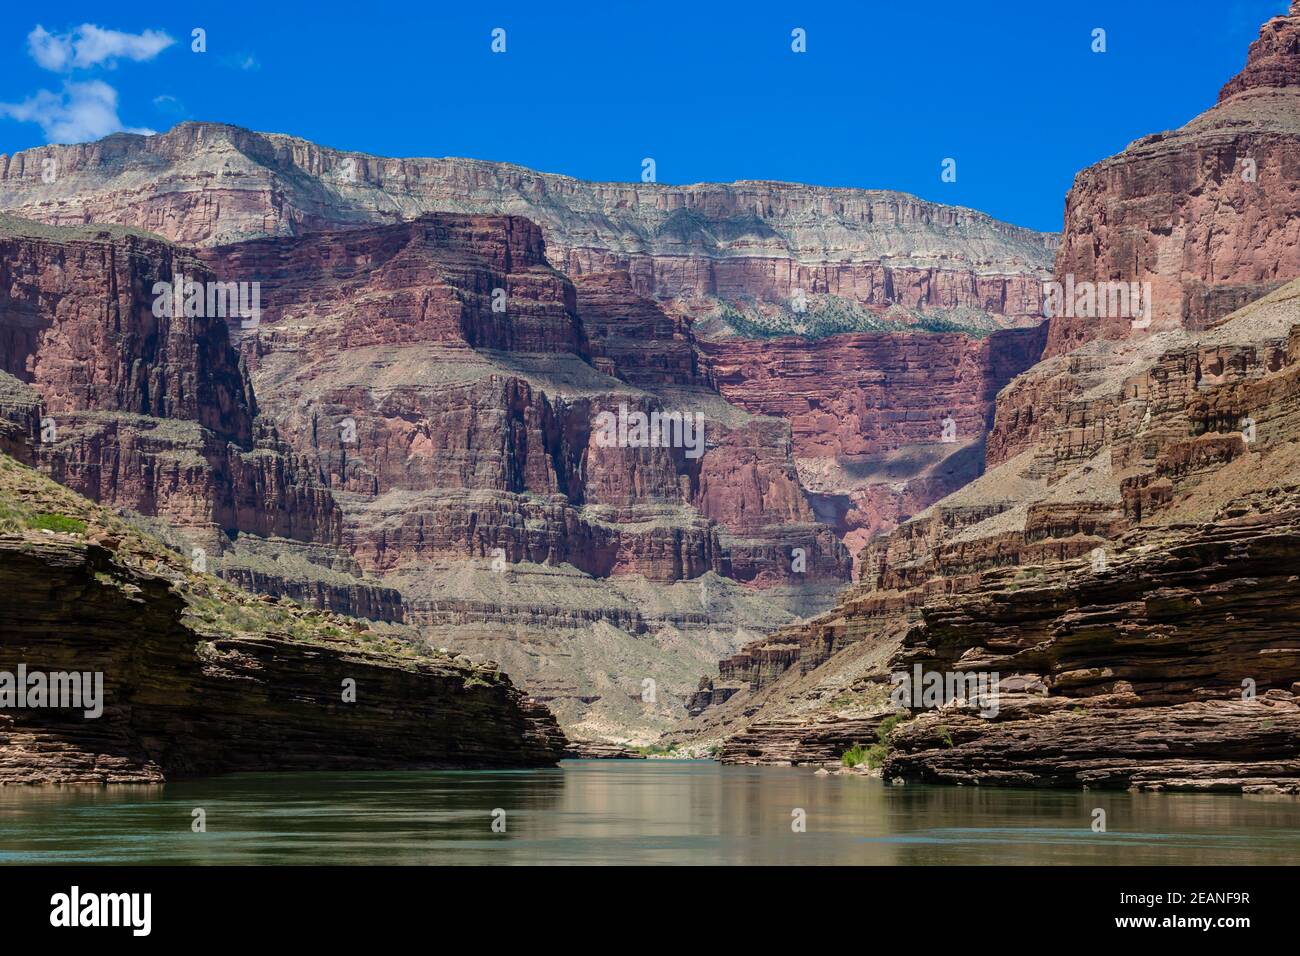 Flottant sur le fleuve Colorado, le parc national du Grand Canyon, site classé au patrimoine mondial de l'UNESCO, Arizona, États-Unis d'Amérique, Amérique du Nord Banque D'Images